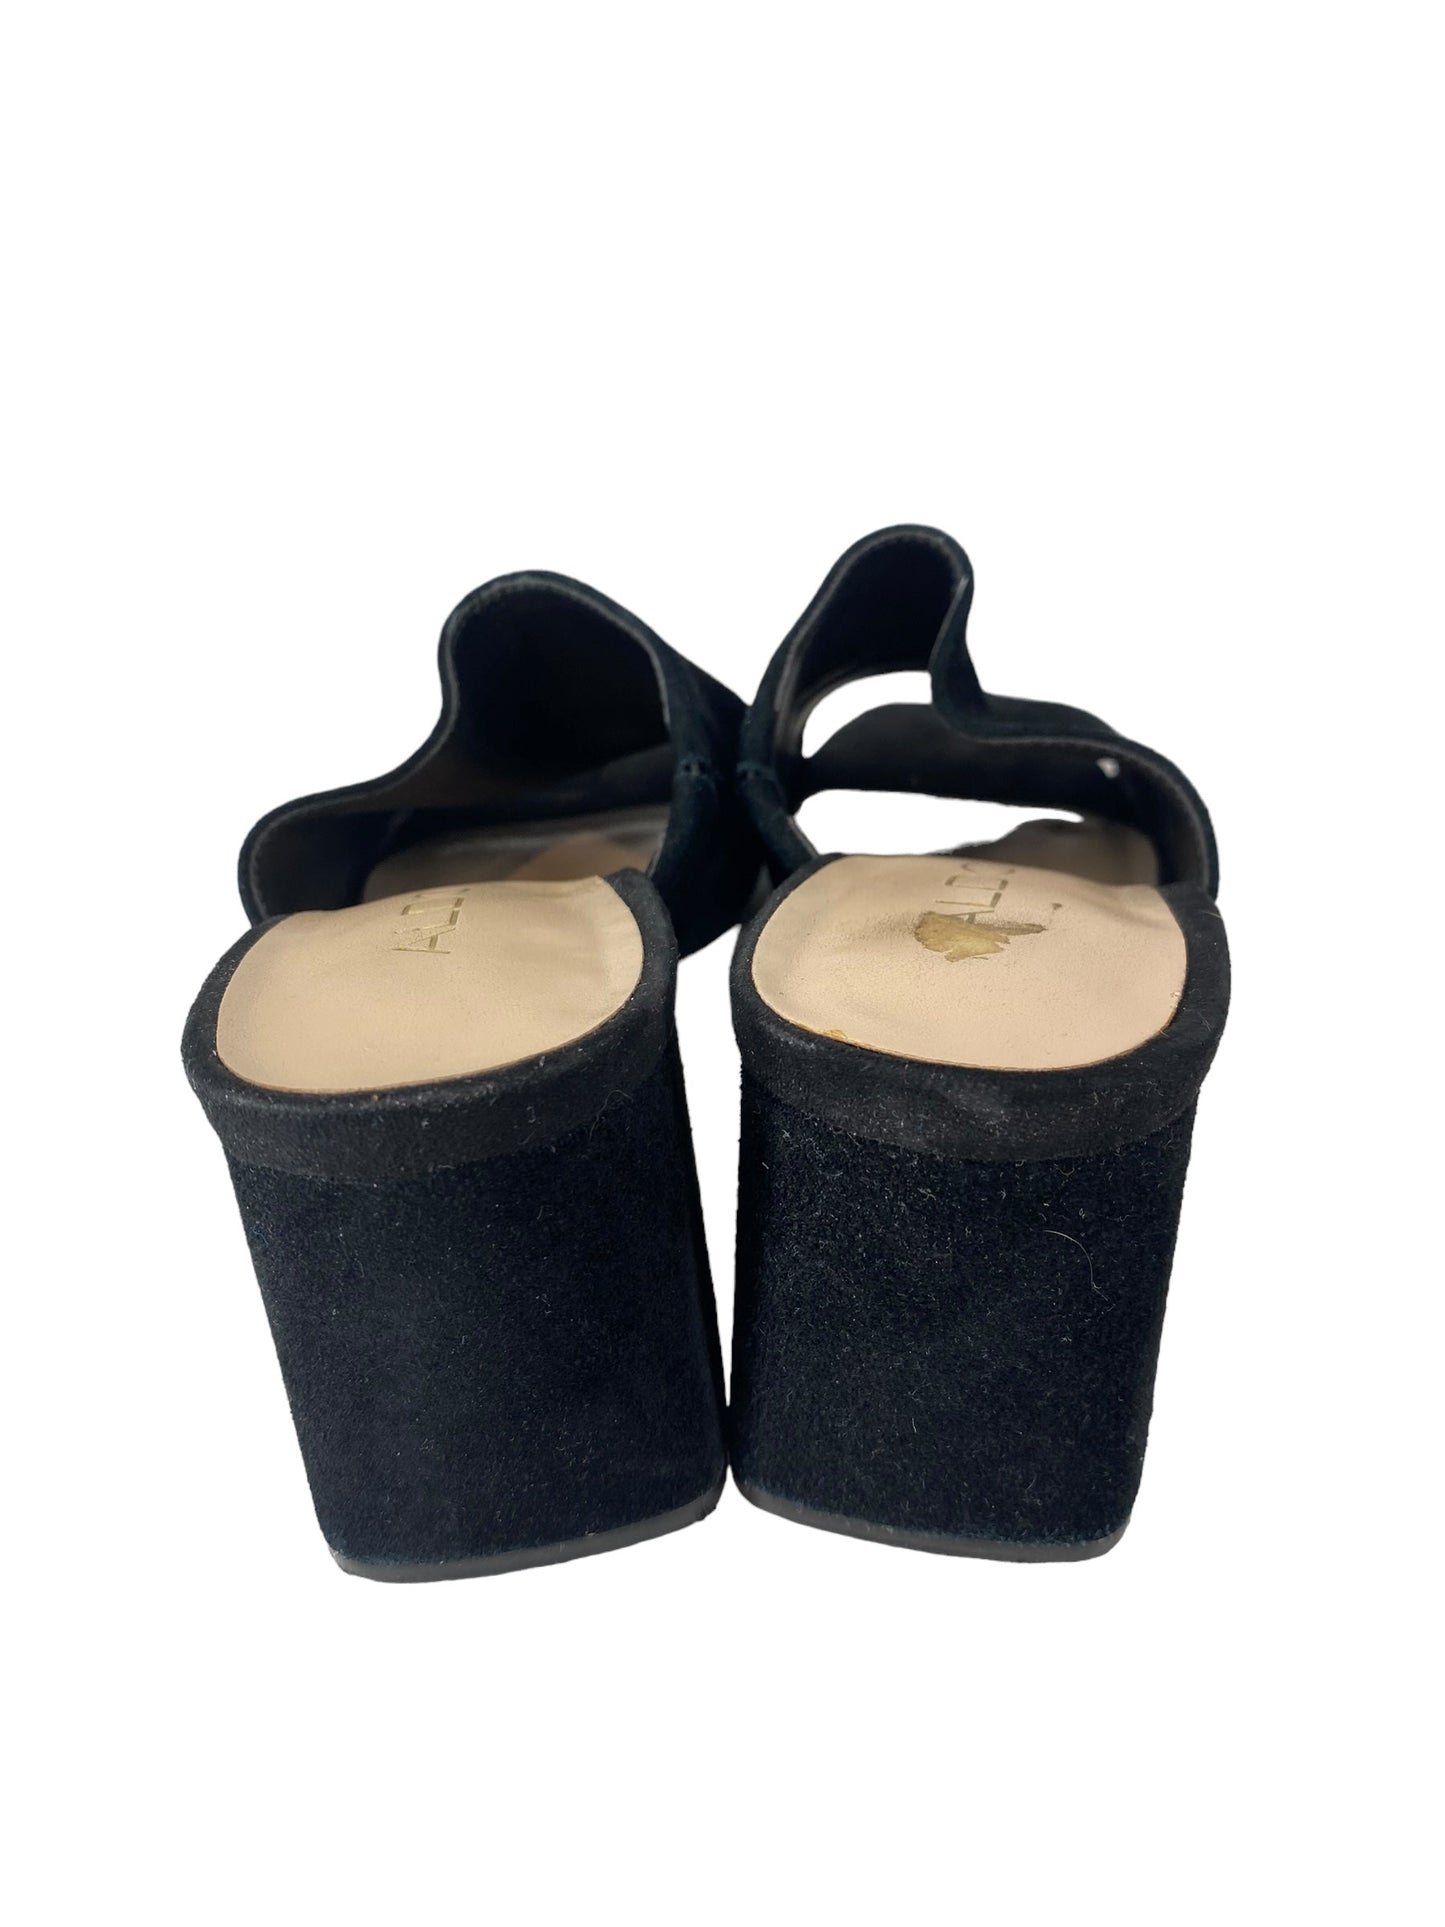 Black Sandals Heels Block Aldo, Size 6